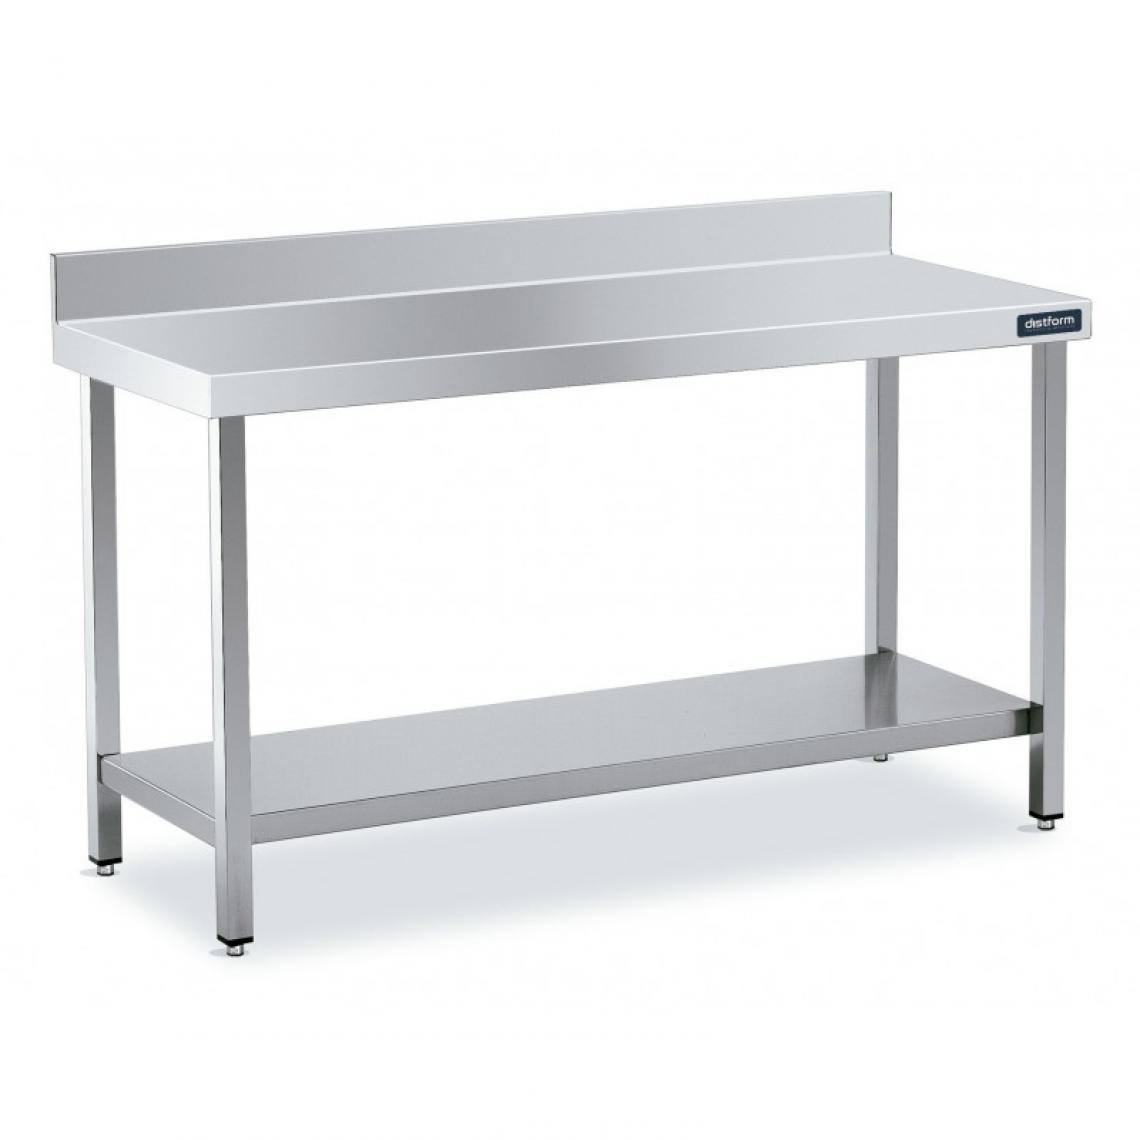 DISTFORM - Table Adossée en Inox avec 1 étagère Profondeur 600 mm - Distform - Acier inoxydable2400x600 - Tables à manger